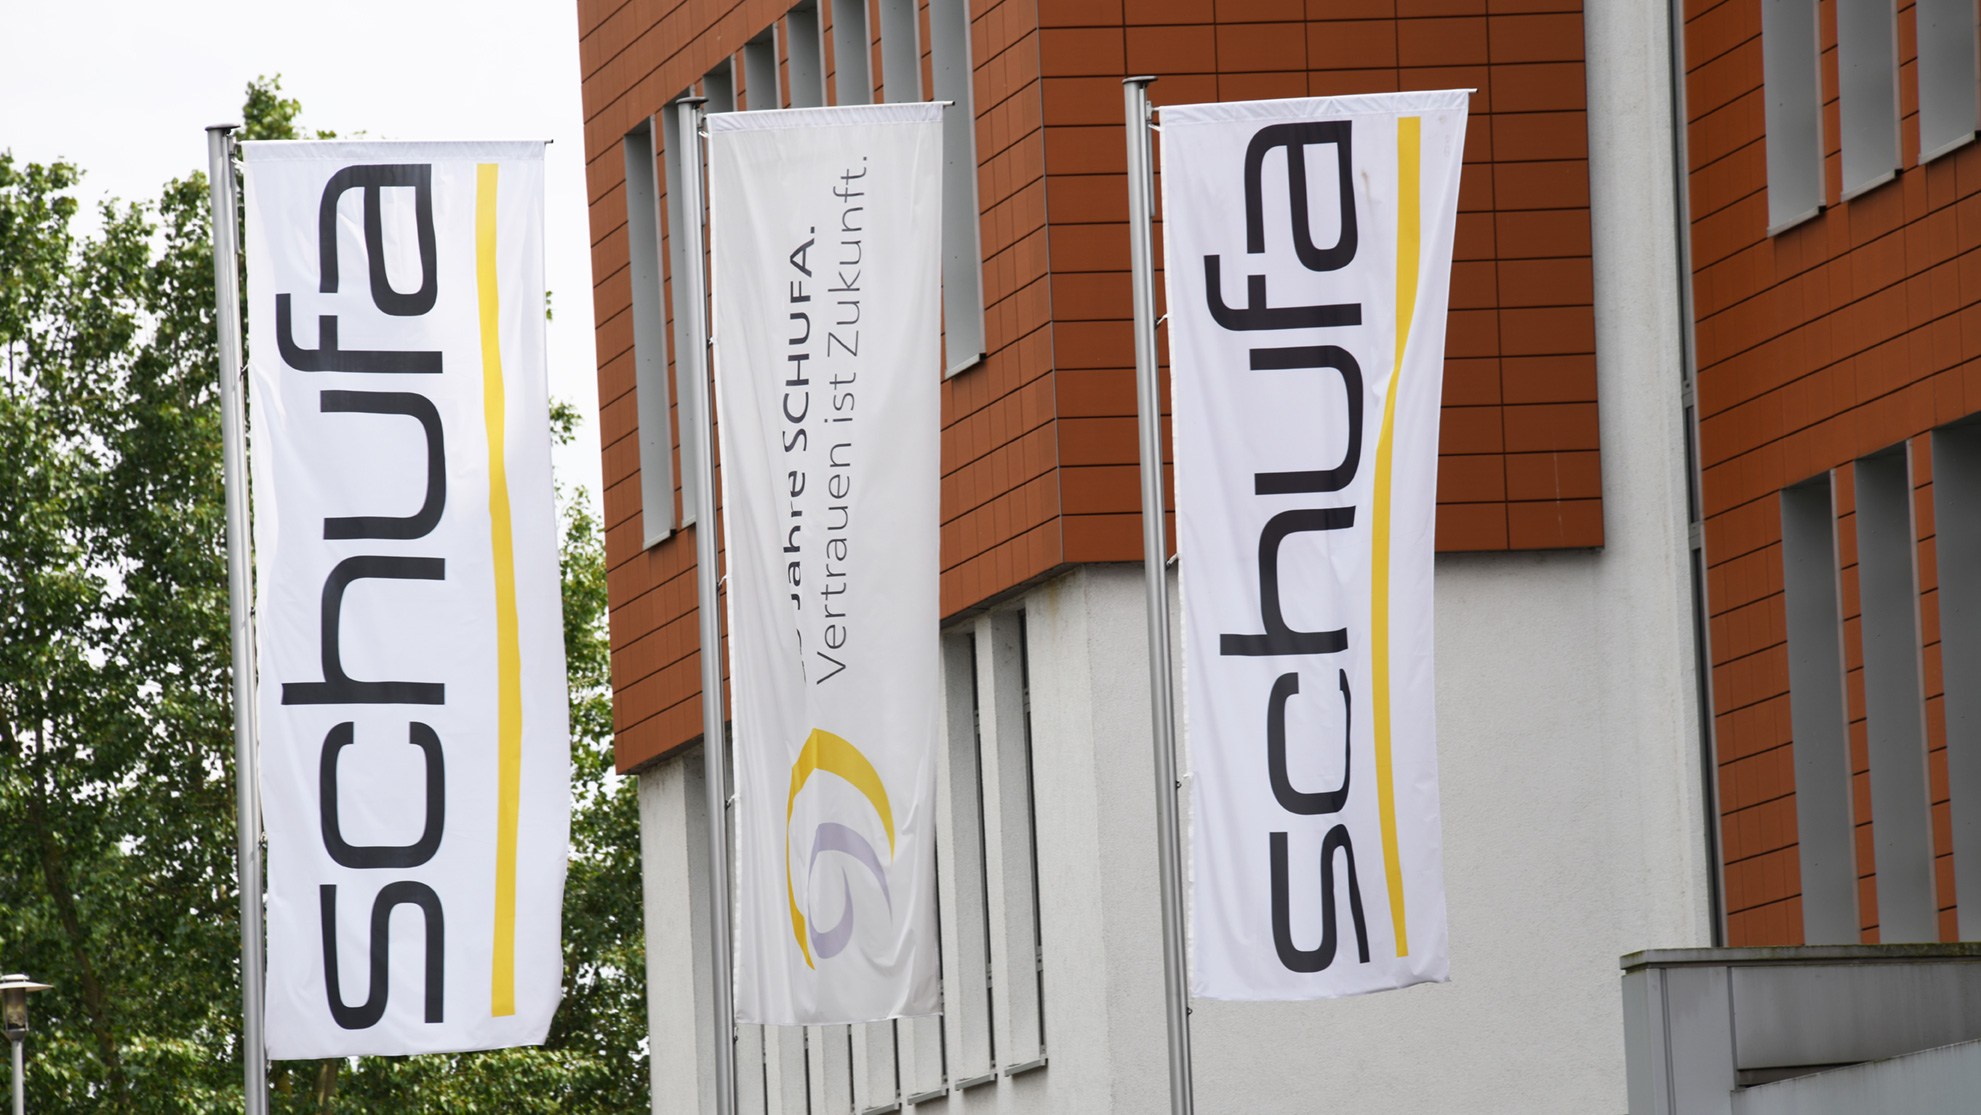 Schufa: Der Unternehmenssitz der wichtigsten Auskunftei in Deutschland